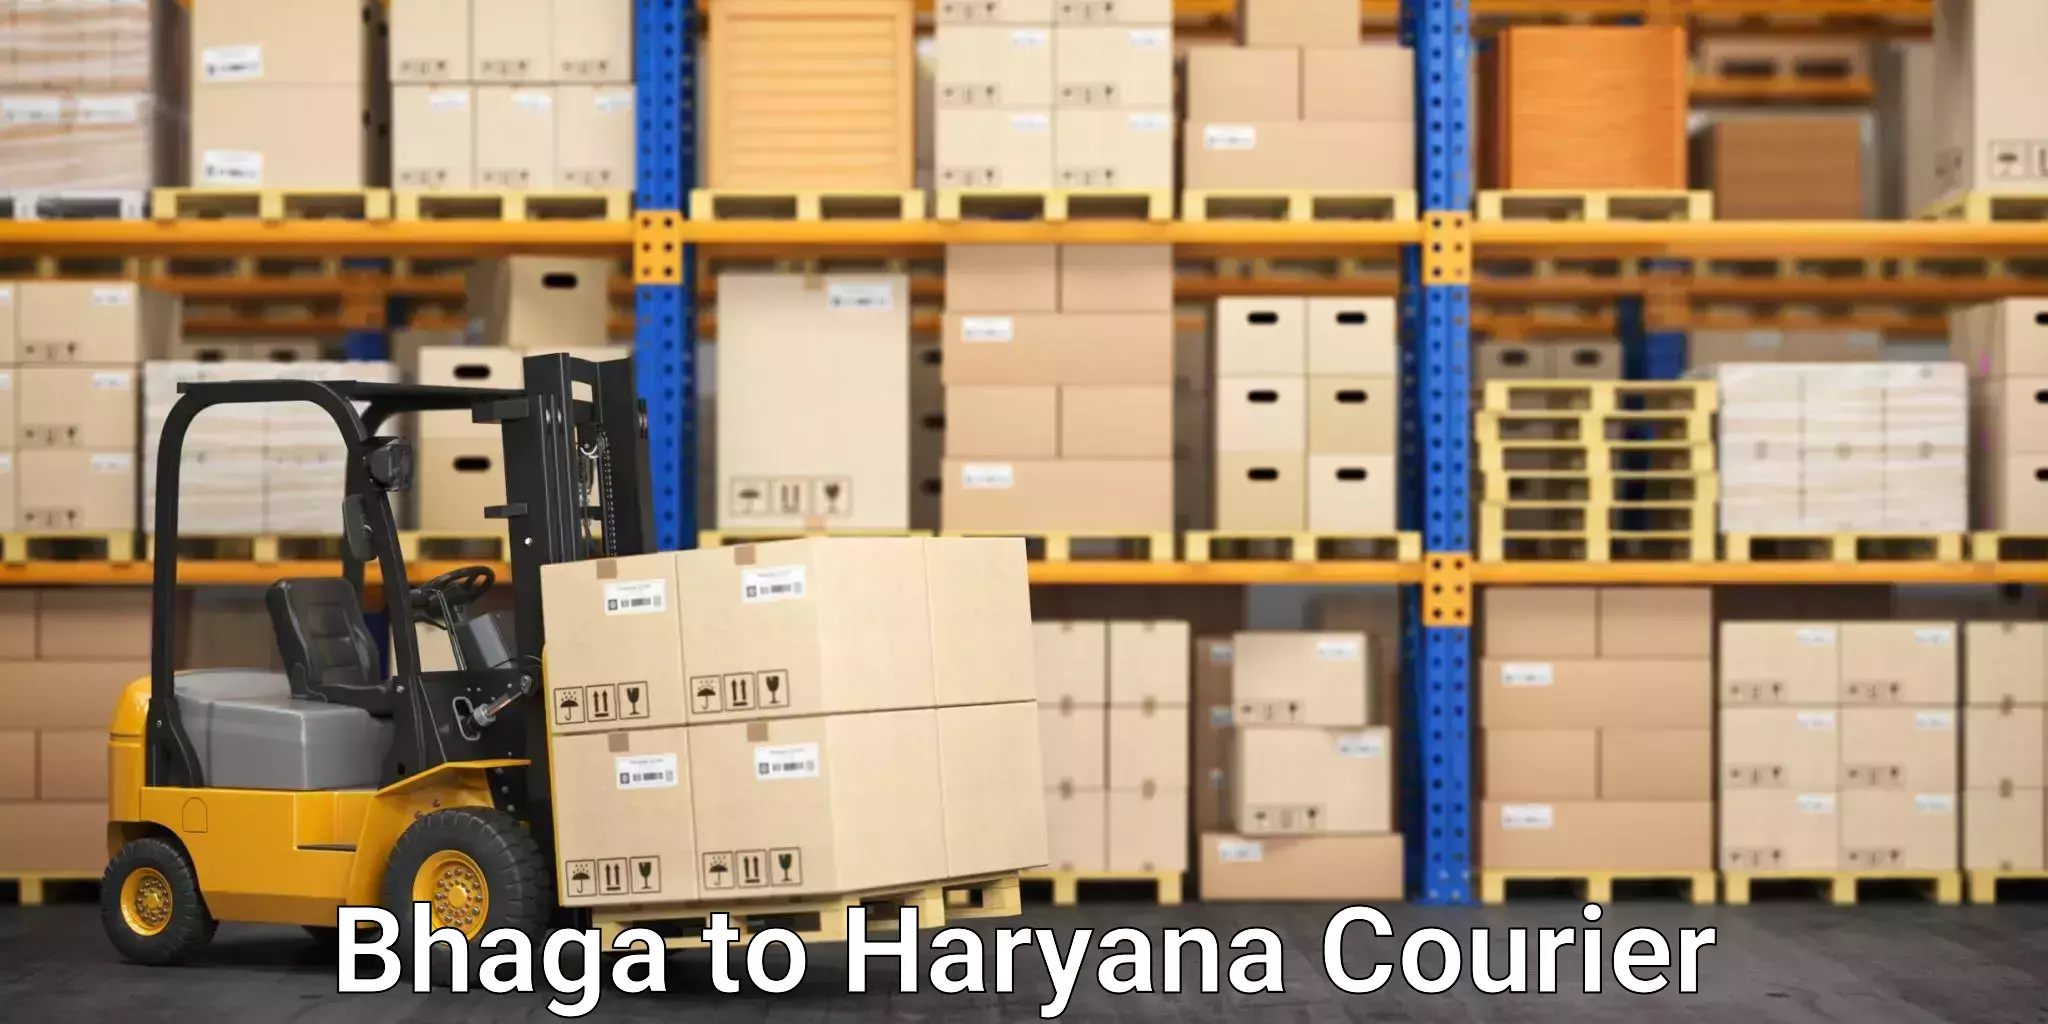 Efficient logistics management Bhaga to Gurgaon